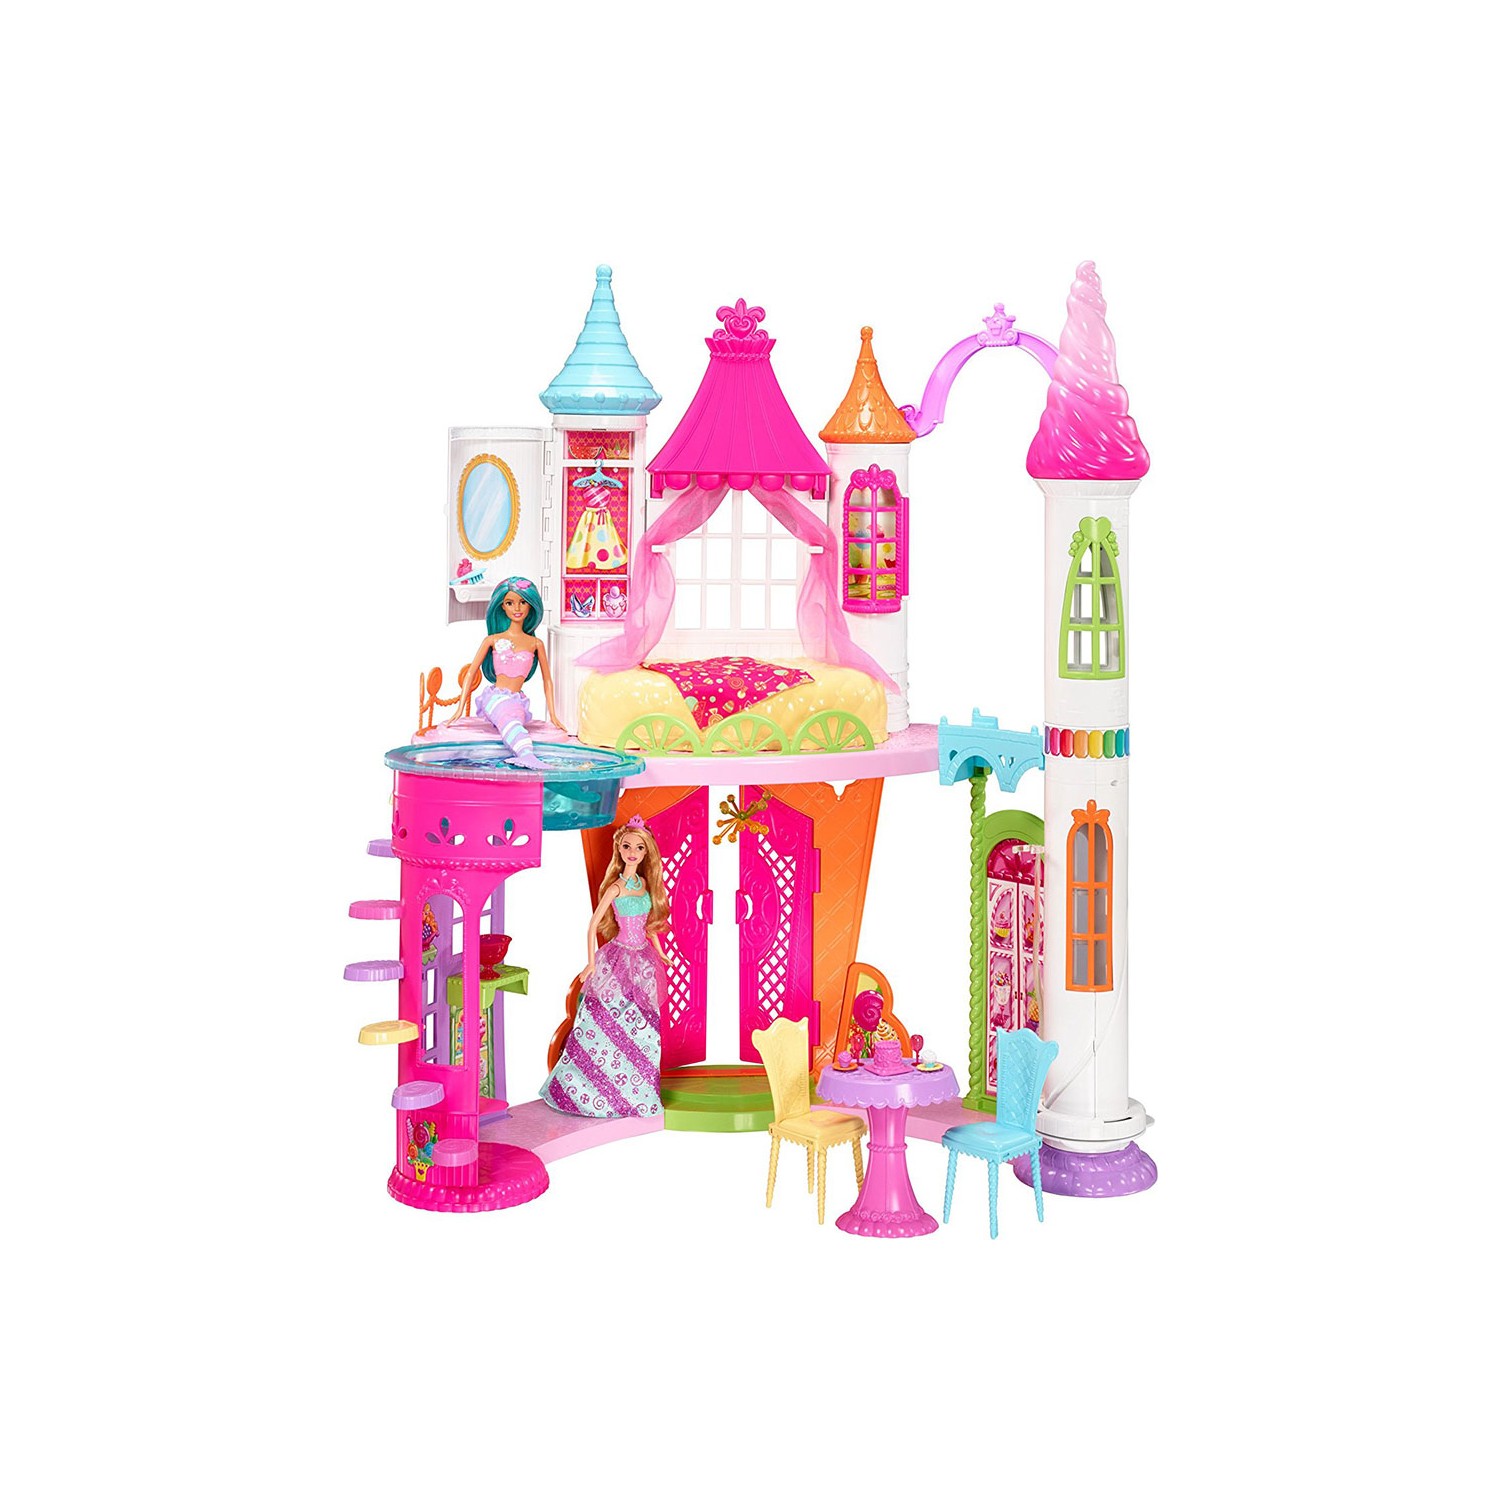 Игровой набор Barbie Dreamtopia Candy Kingdom Sato игровой набор barbie заботливая принцесса gjk49